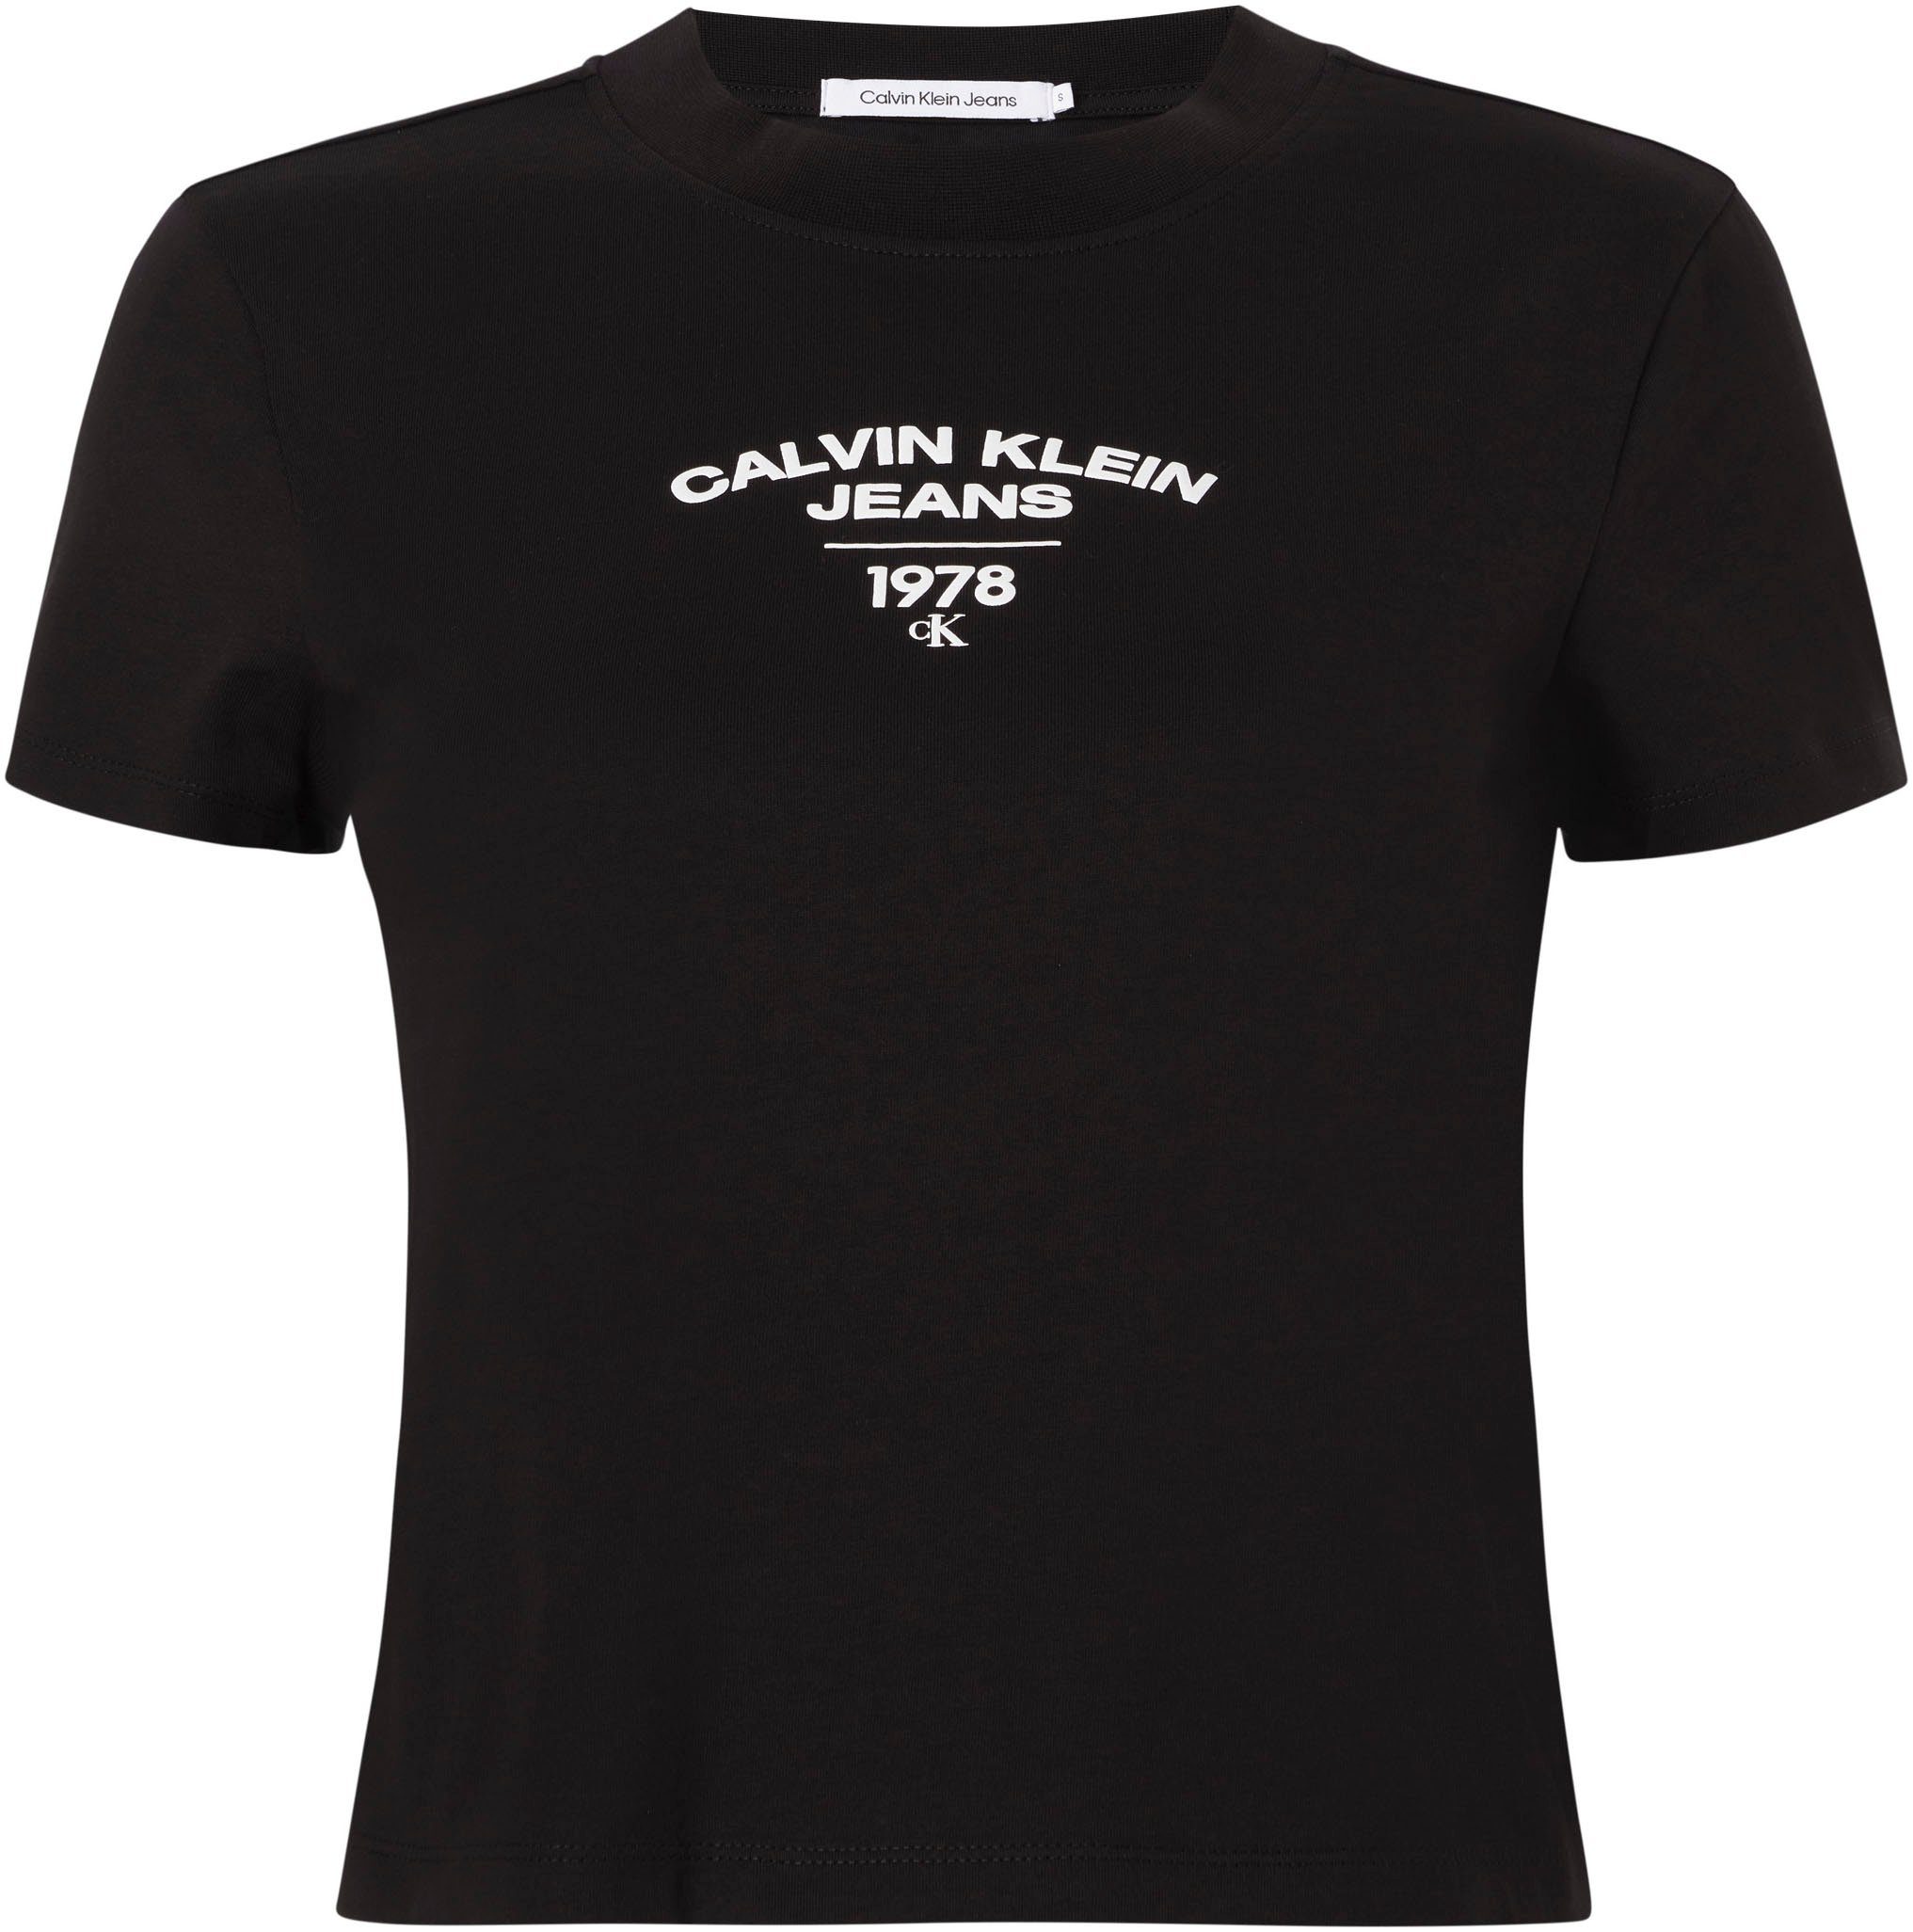 Black Ck T-Shirt Klein PLUS Jeans LOGO TEE Plus REGULAR VARISTY Calvin